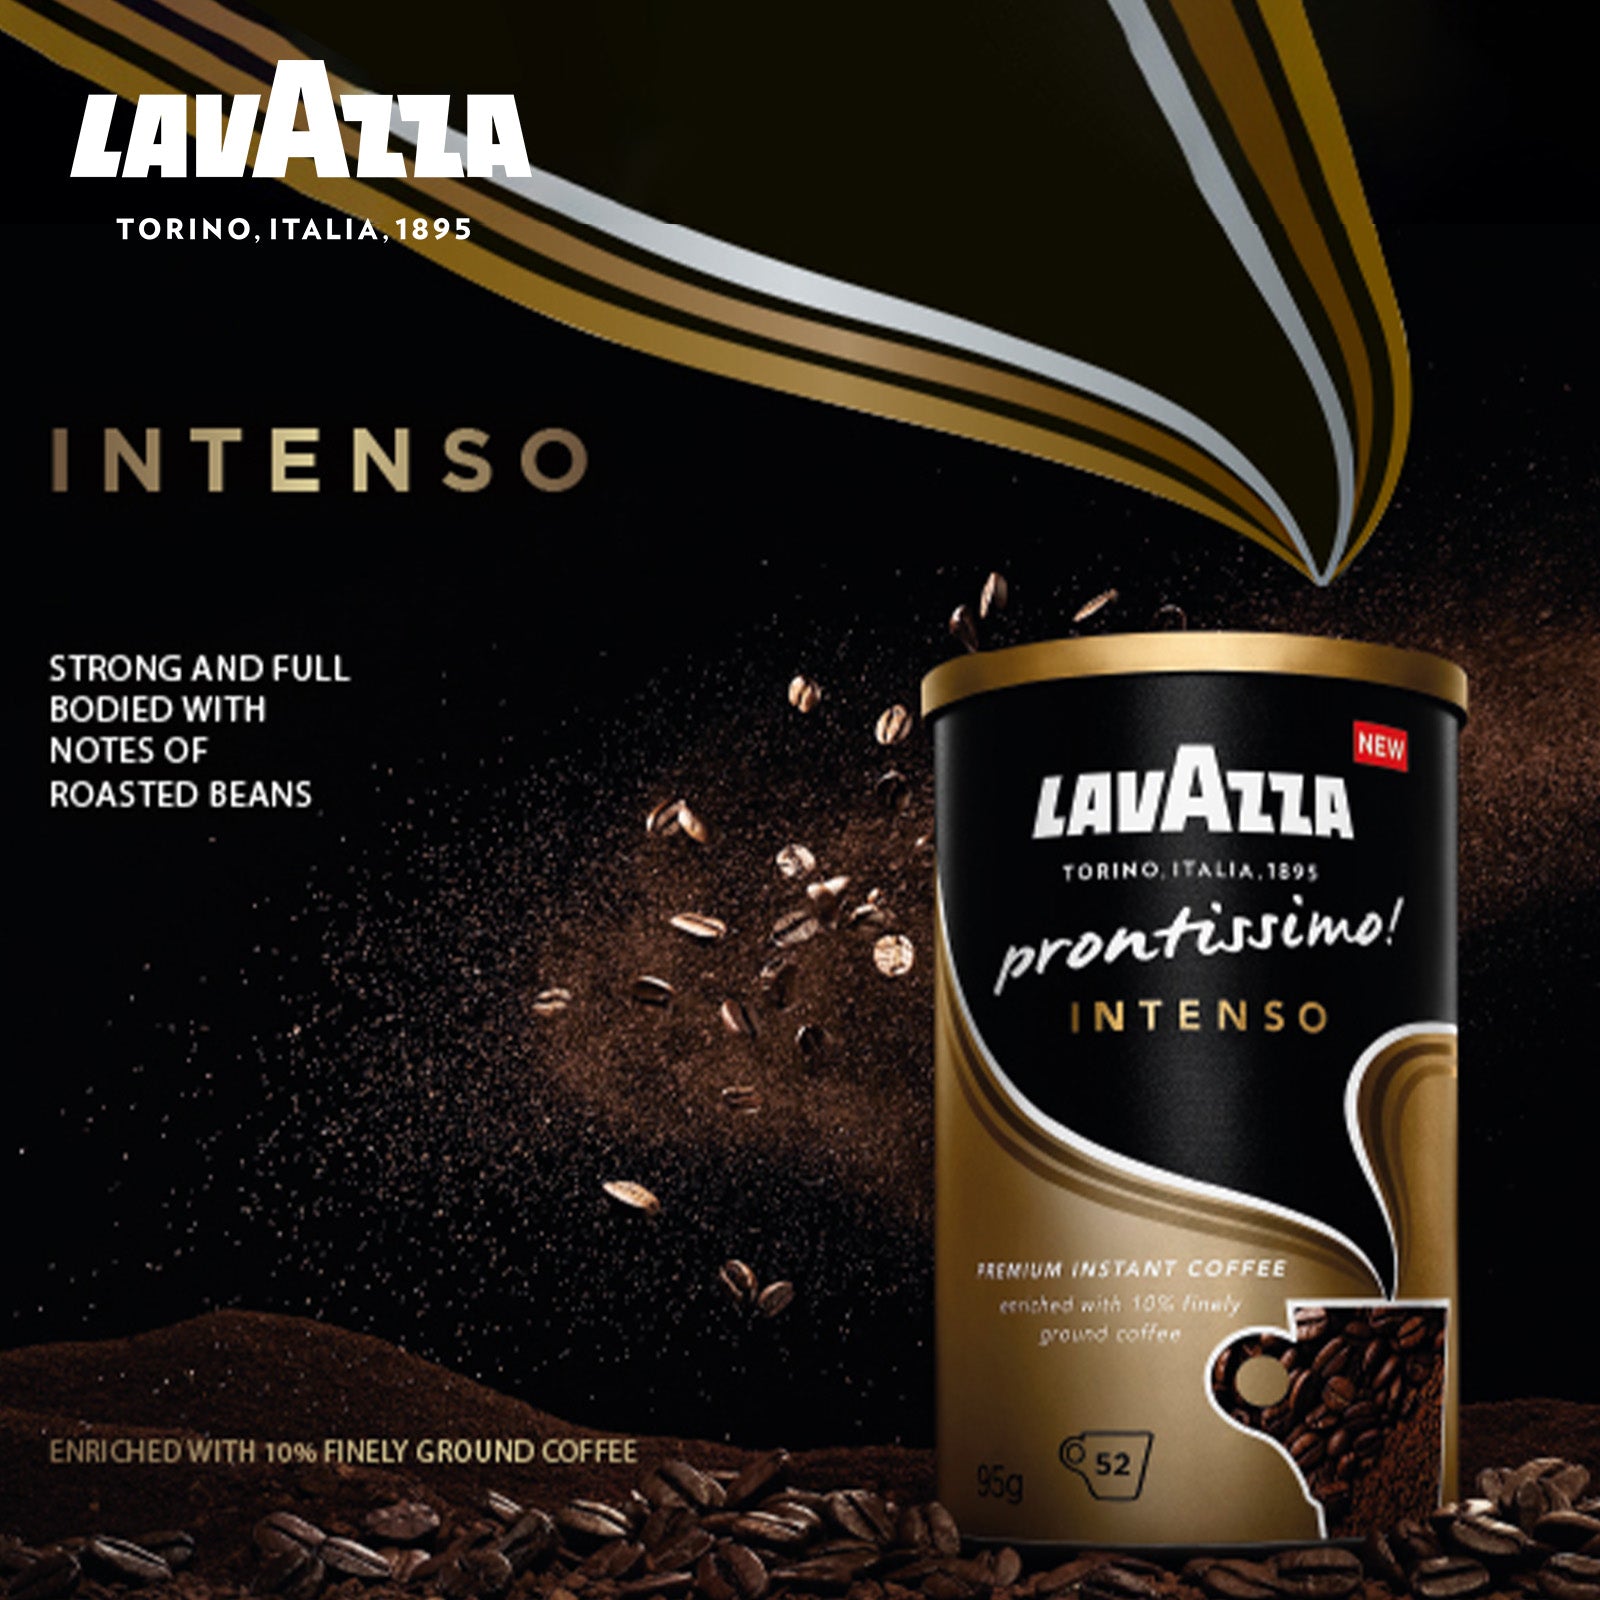 LAVAZZA prontissimo! Premium Instant Coffee 95G